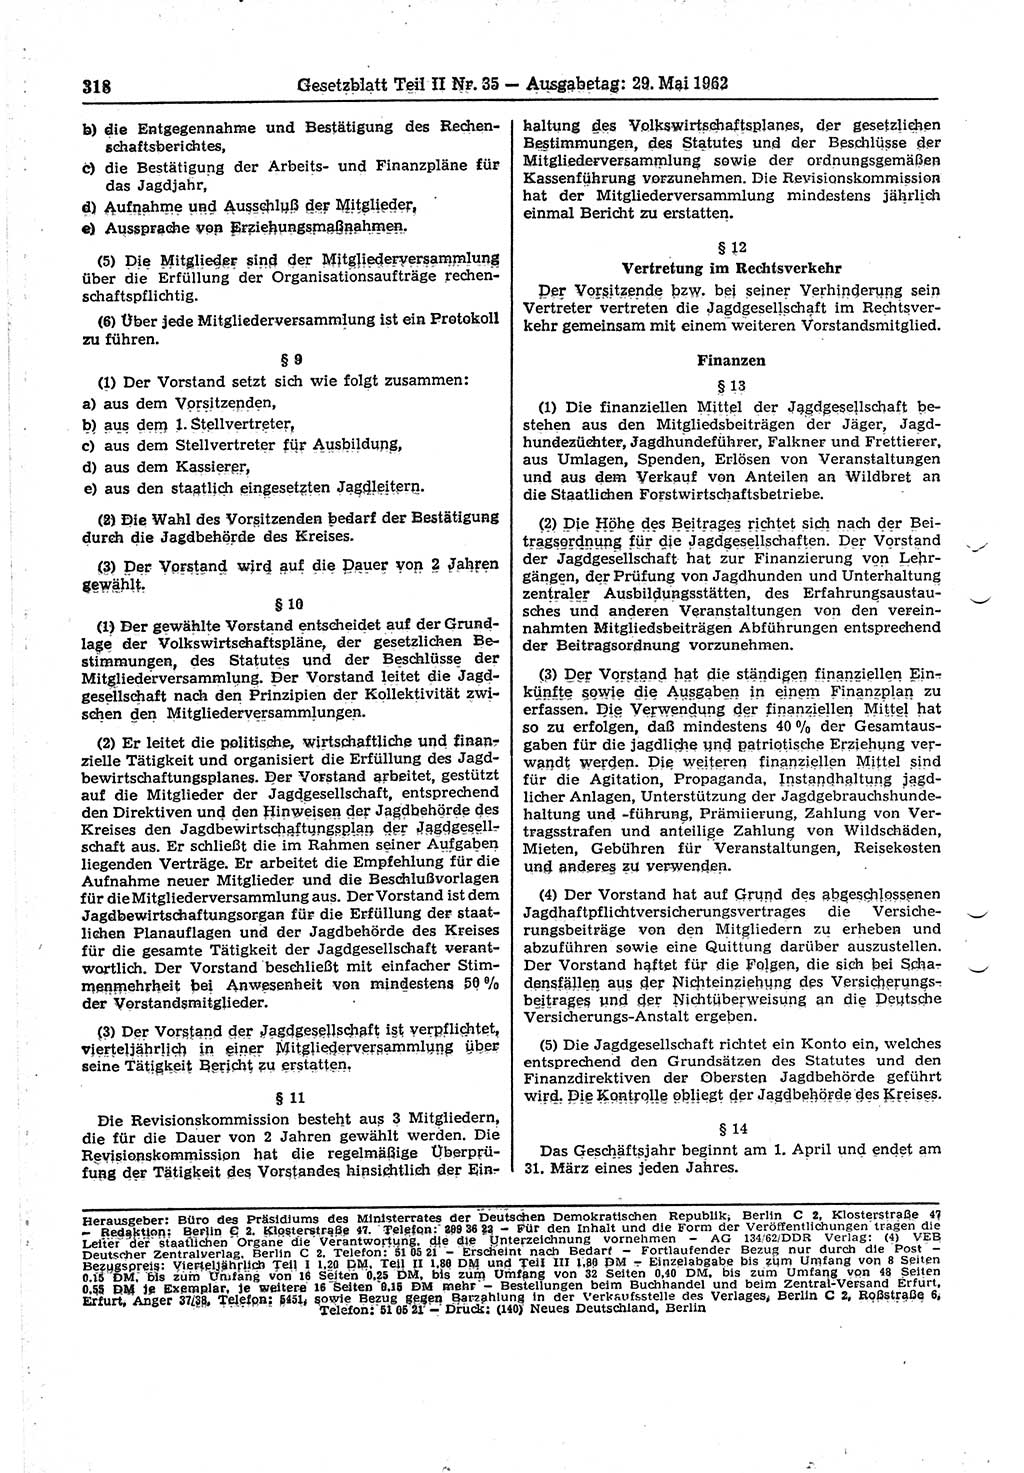 Gesetzblatt (GBl.) der Deutschen Demokratischen Republik (DDR) Teil ⅠⅠ 1962, Seite 318 (GBl. DDR ⅠⅠ 1962, S. 318)